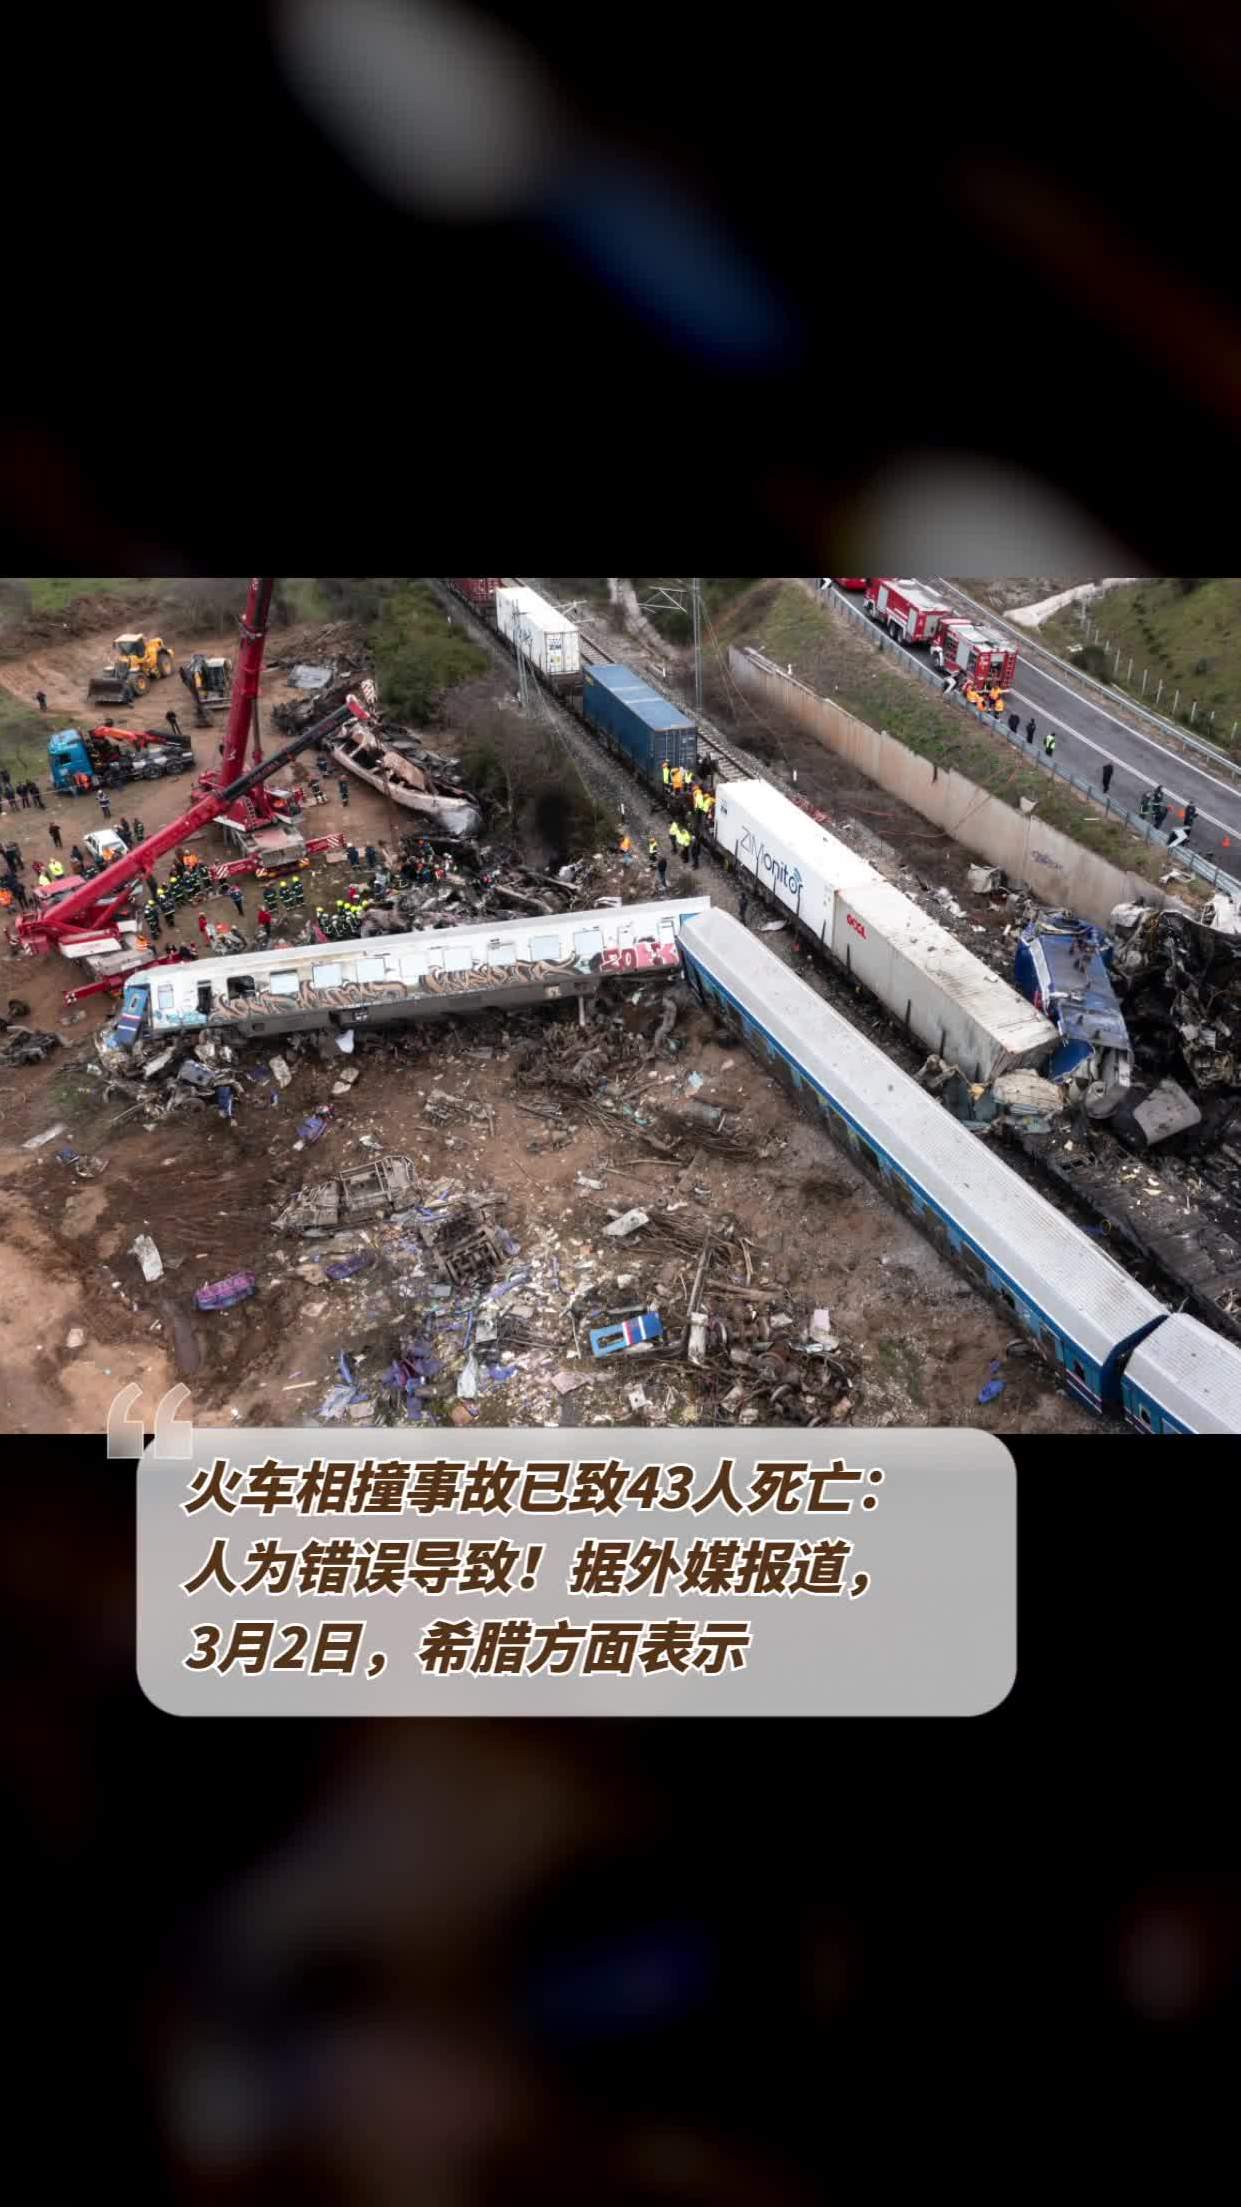 火车相撞事故已致43人死亡:人为错误导致!